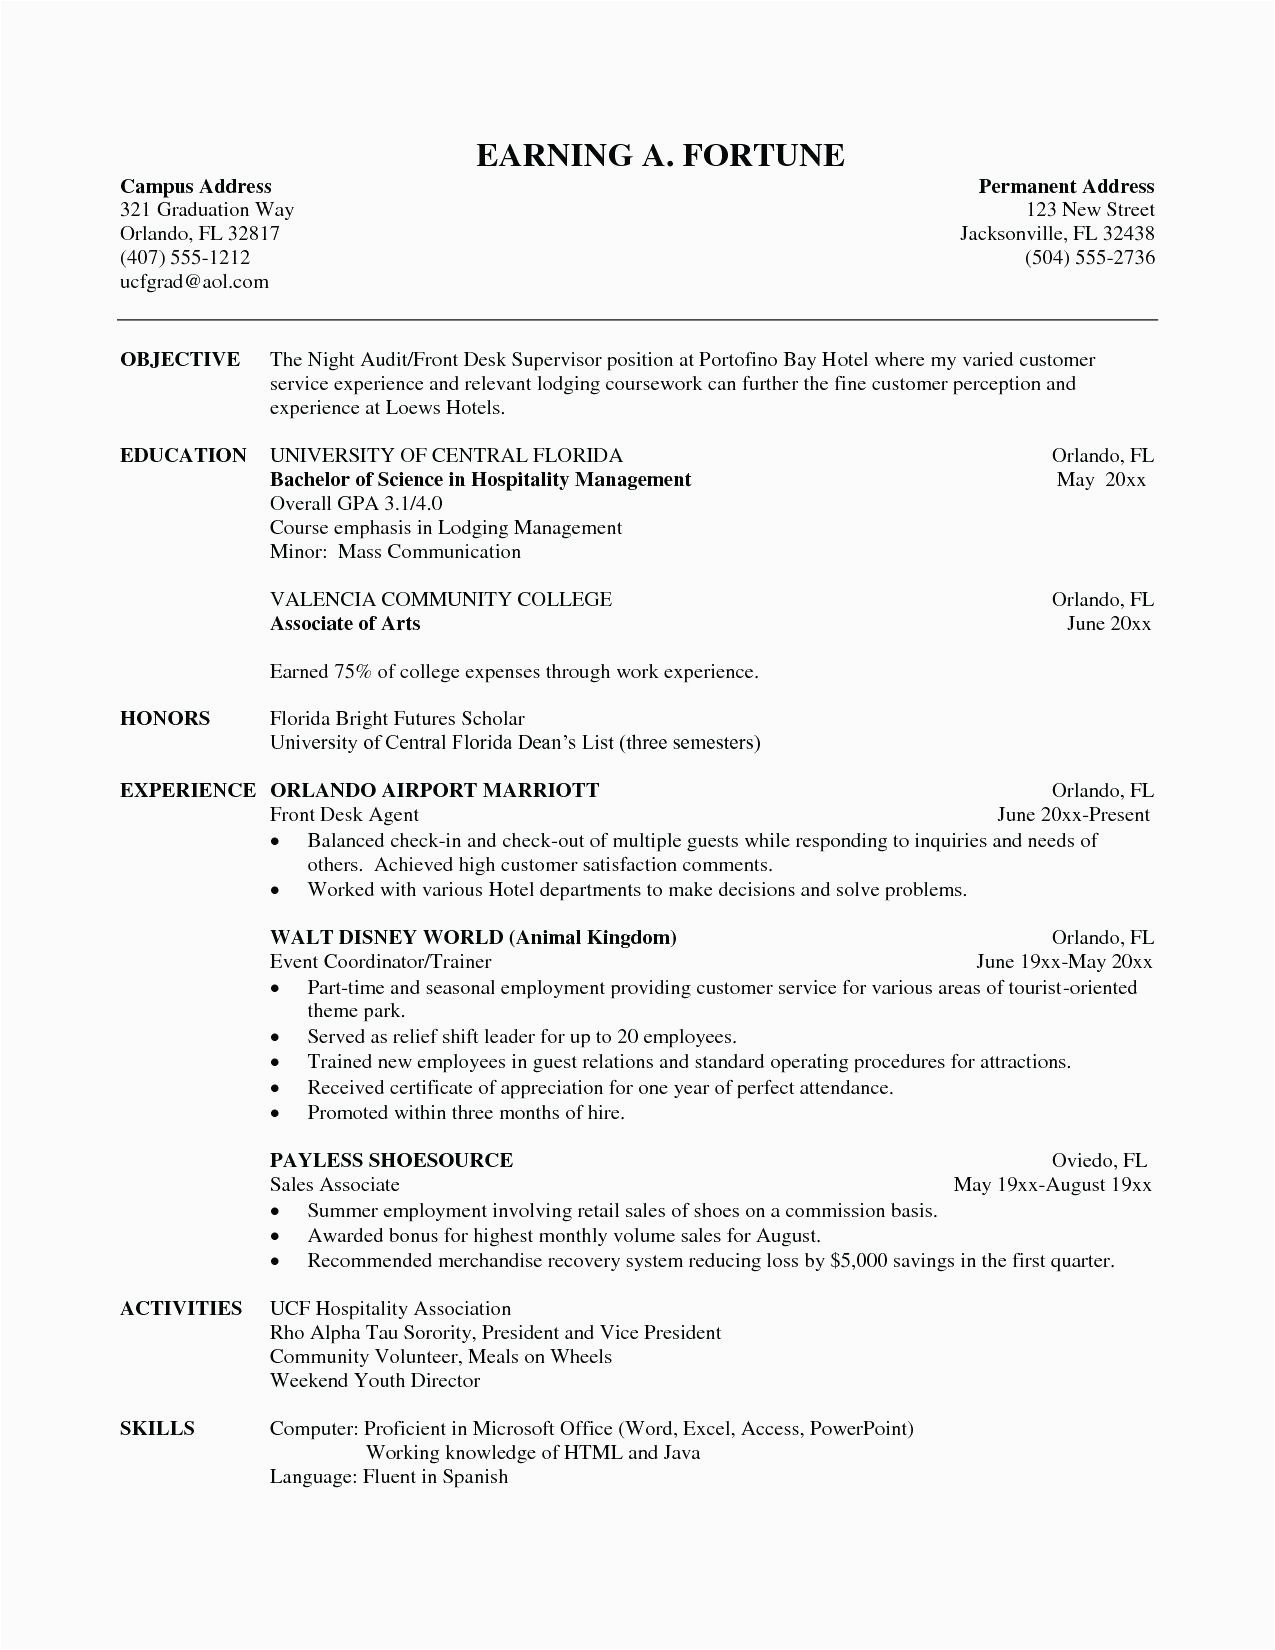 Sample Resume for Mass Communication Student 10 Mass Munications Resume Proposal Resume